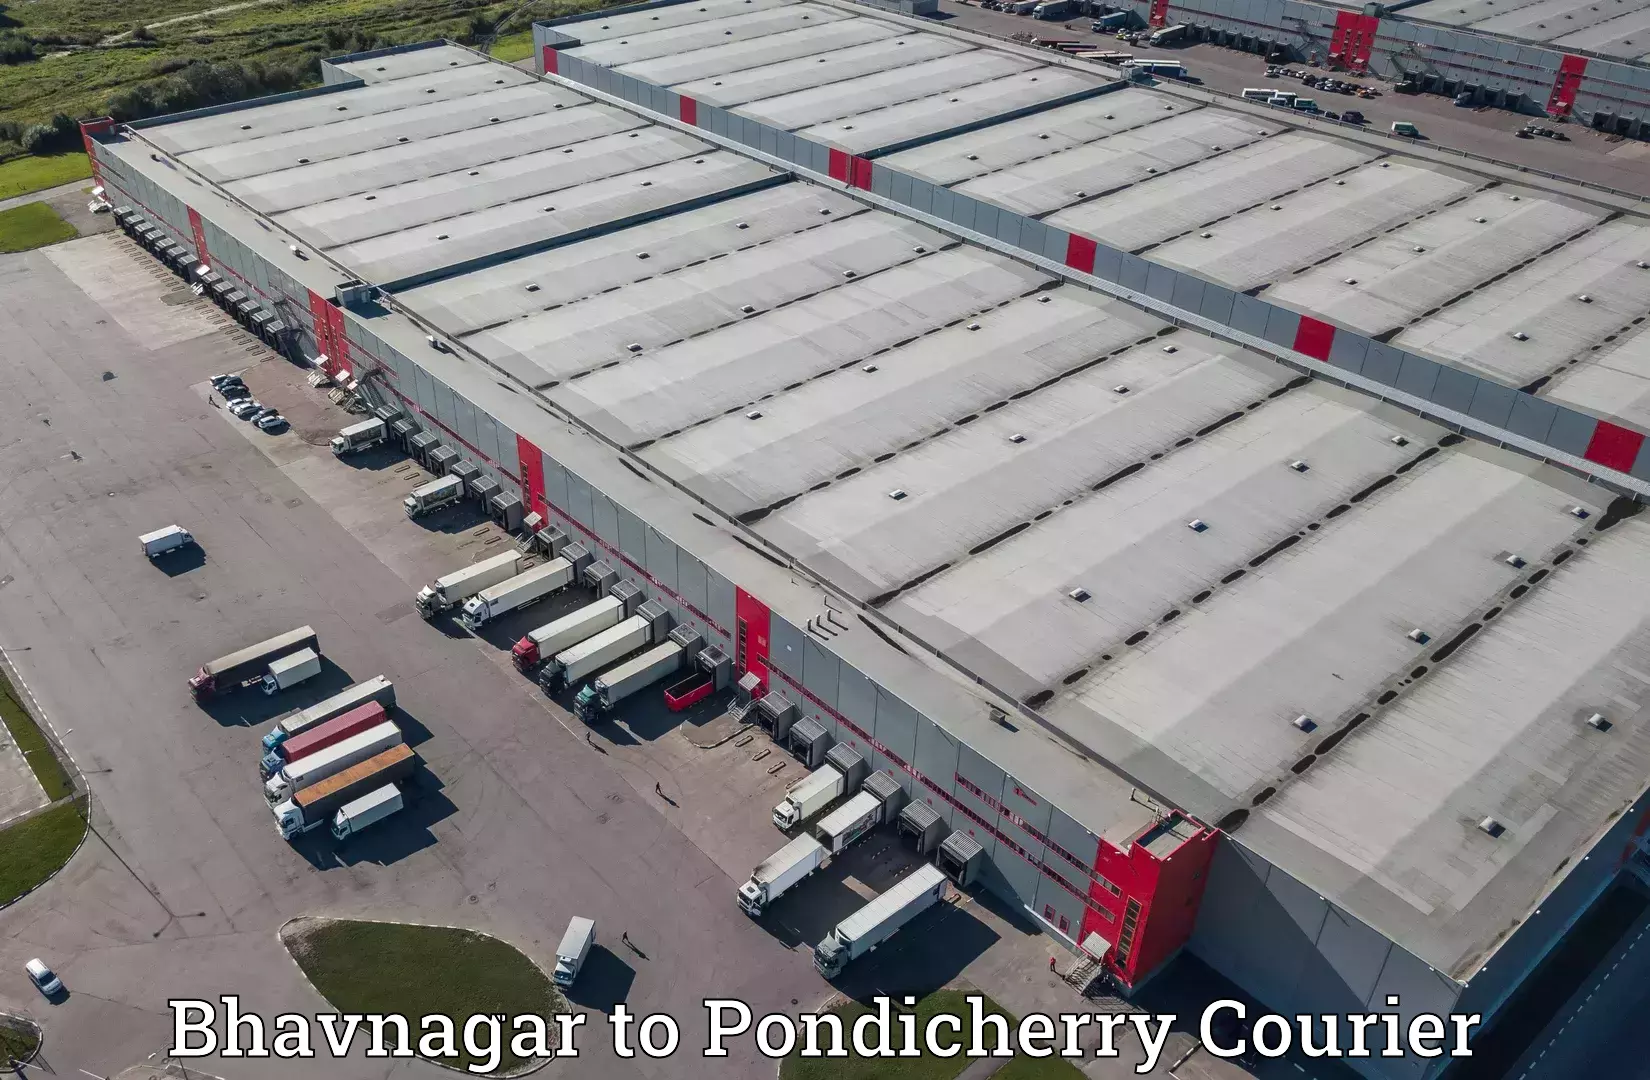 Cargo delivery service Bhavnagar to Pondicherry